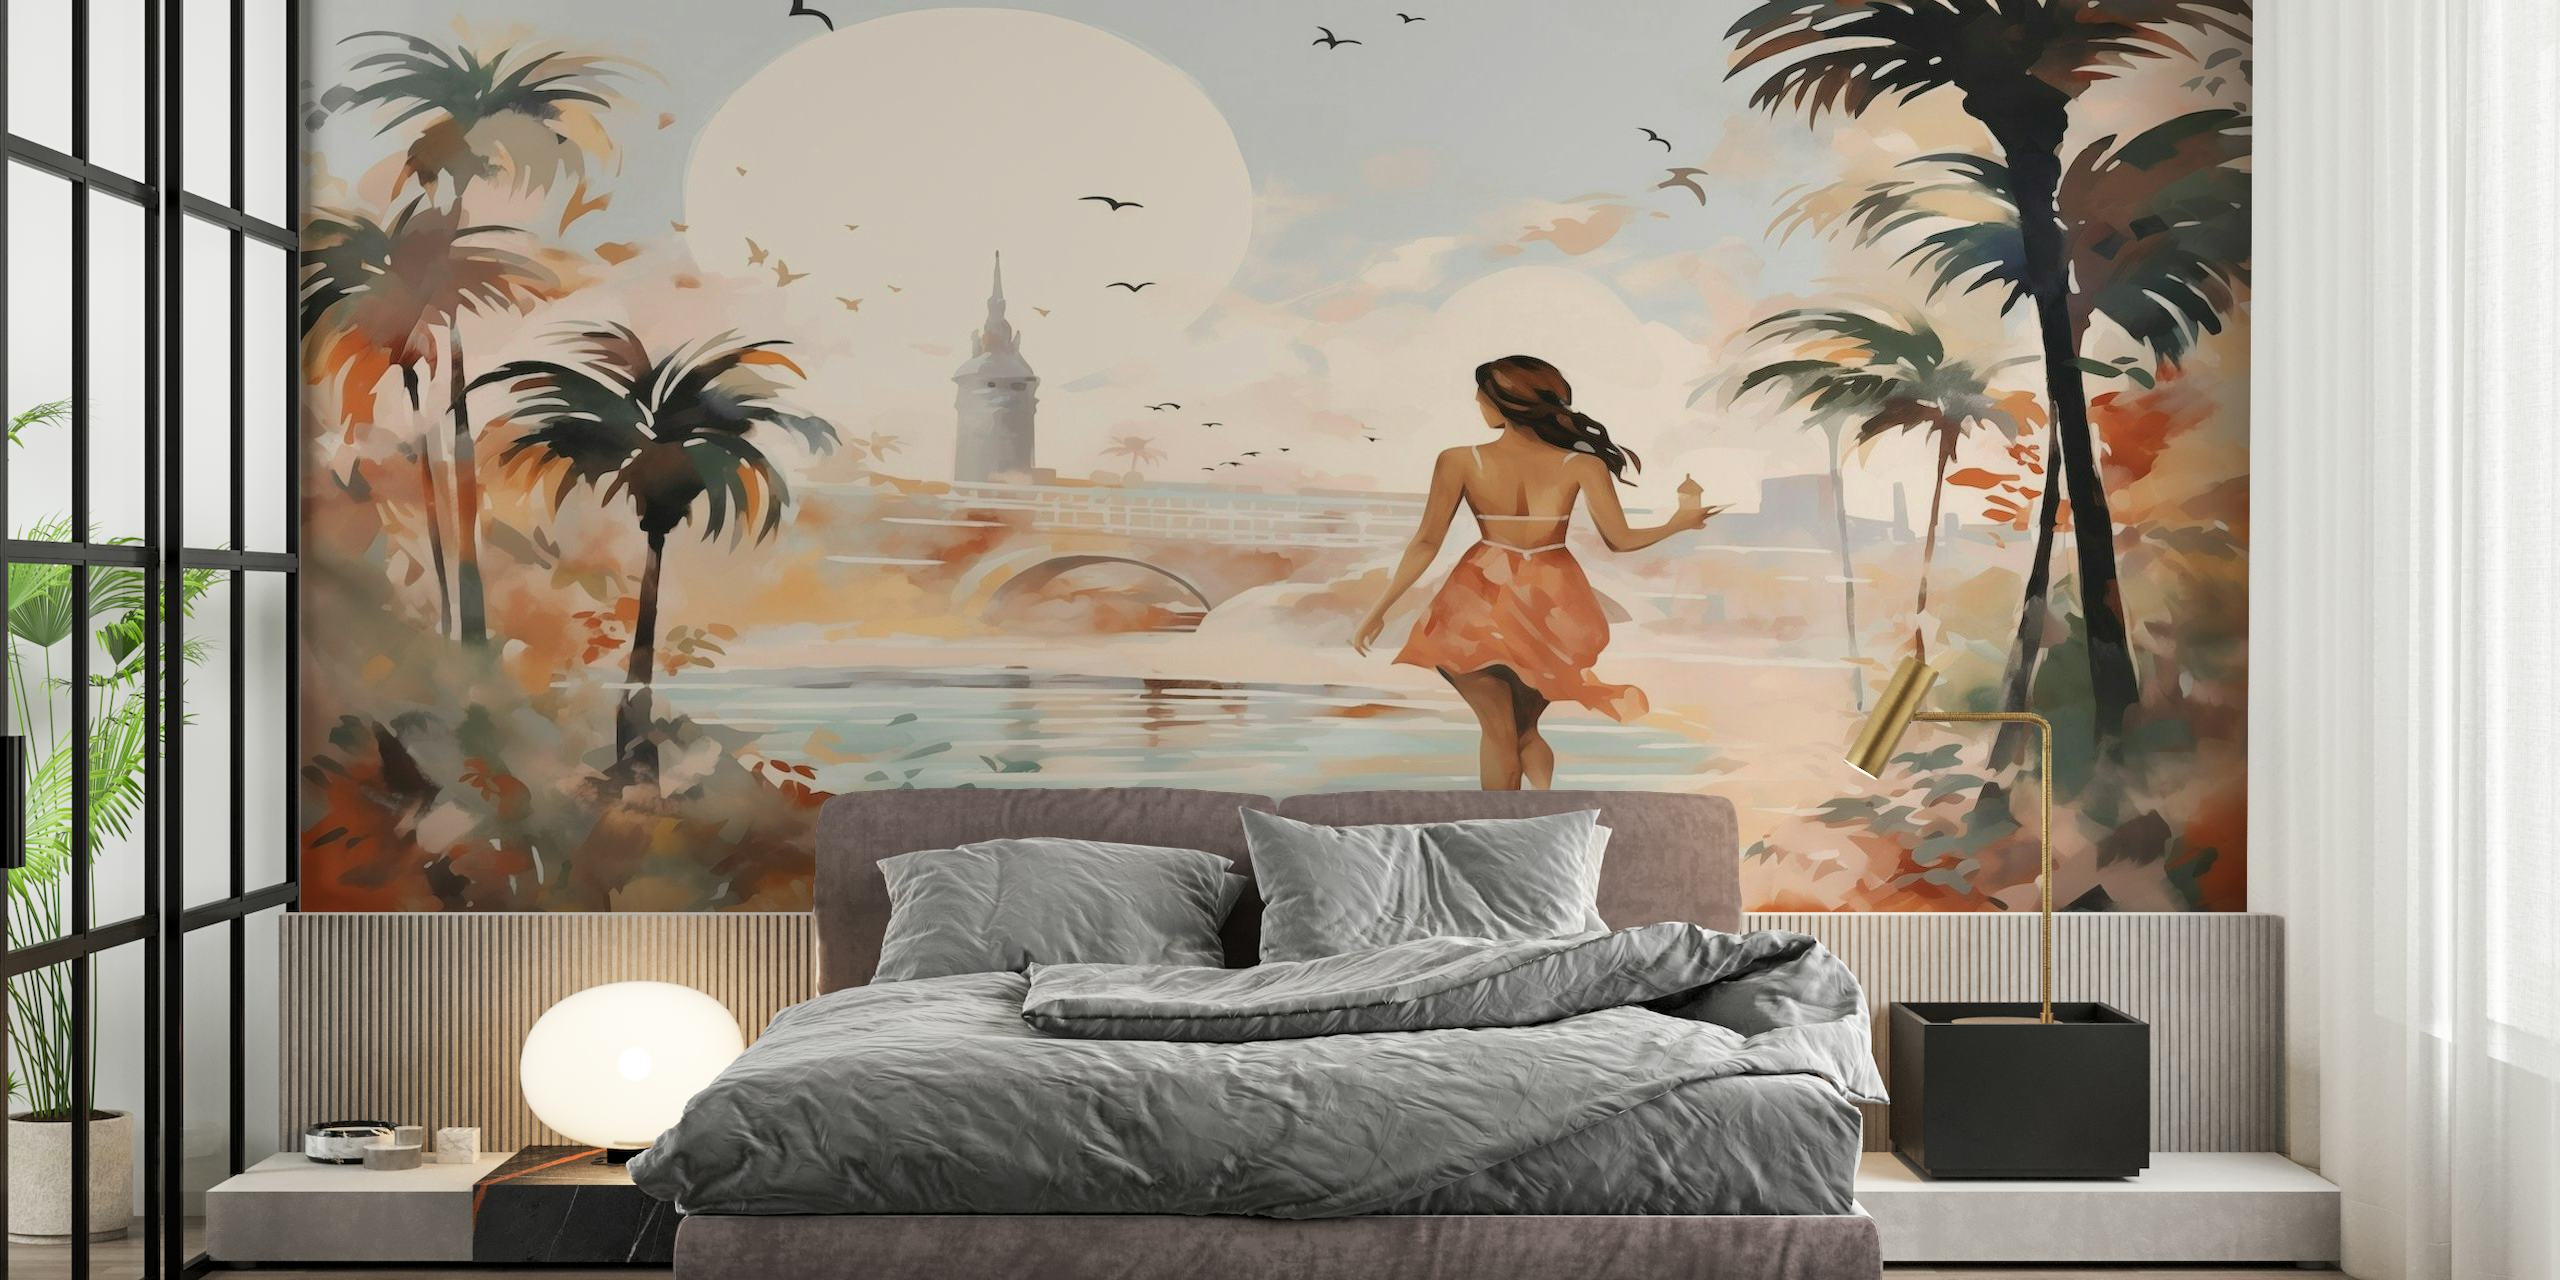 Impresionistički ljetni gradski zidni mural sa siluetom osobe koja hoda ispod palmi.